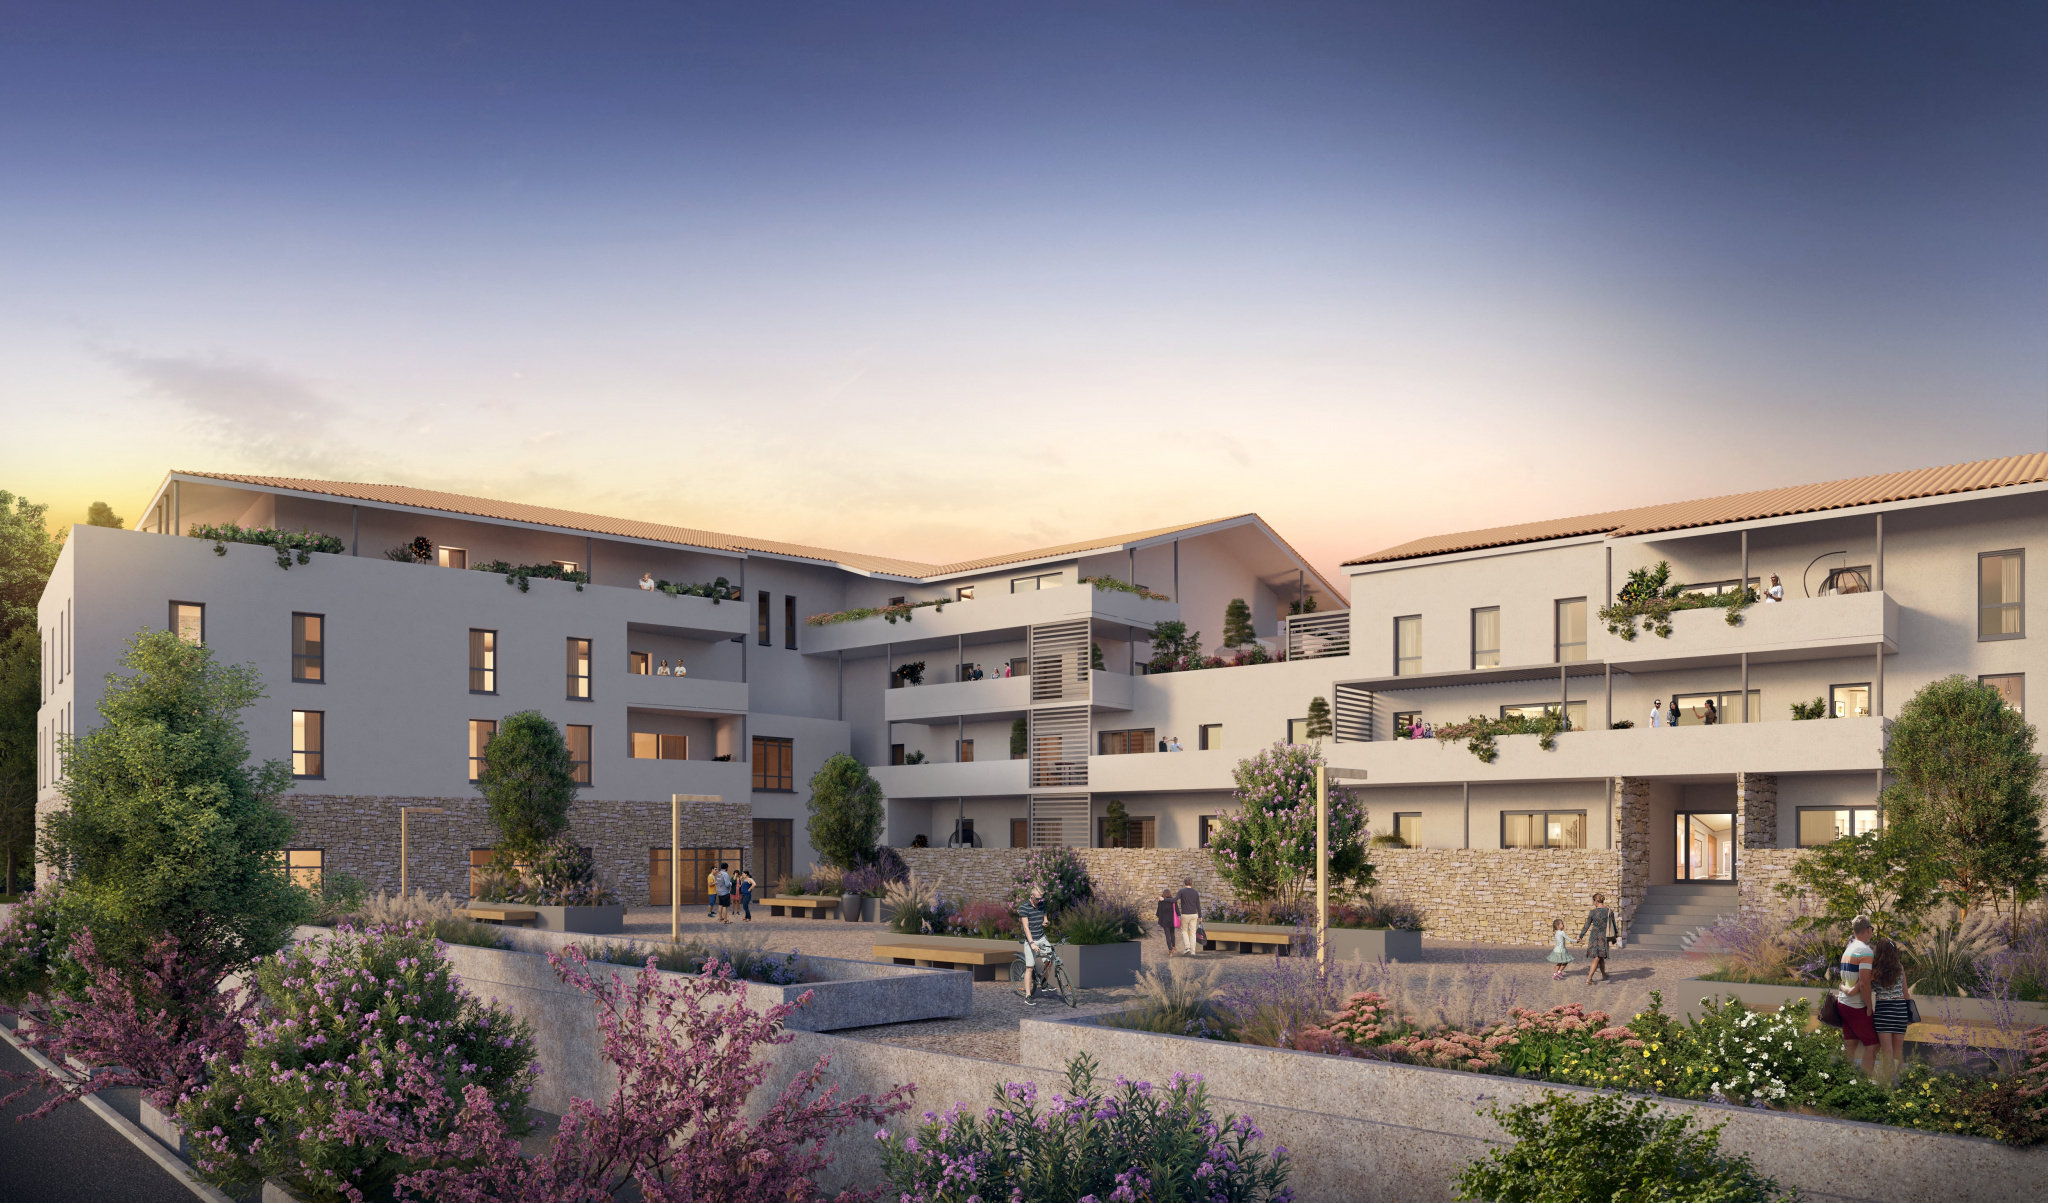 Nouveau programme immobilier neuf à Saint-andré de sangonis, proche Montpellier (1 à 4 pièces, 33 à 88 m²) Saint-André-de-Sangonis